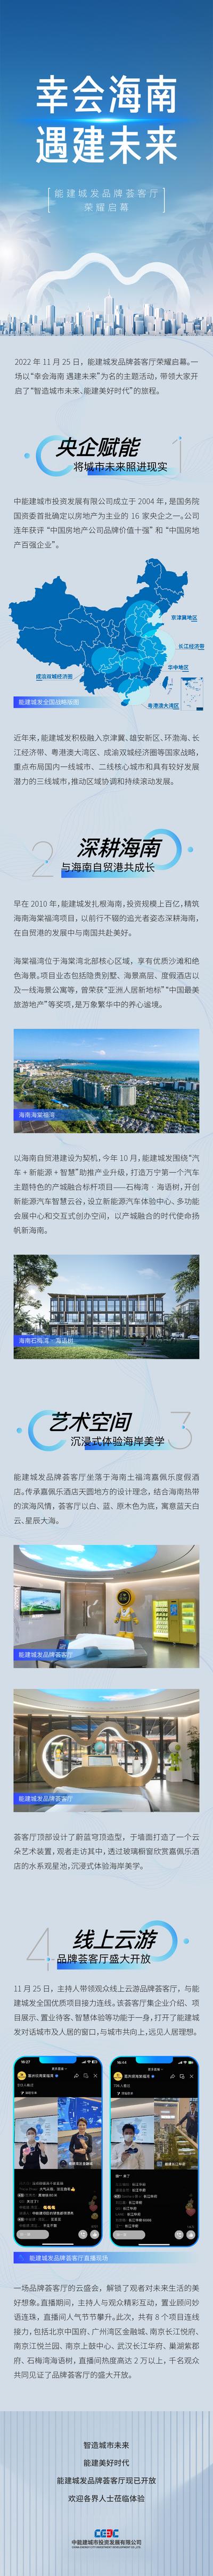 南门网 海报 长图 房地产 价值点 海南 科技 发布会 品牌 地图